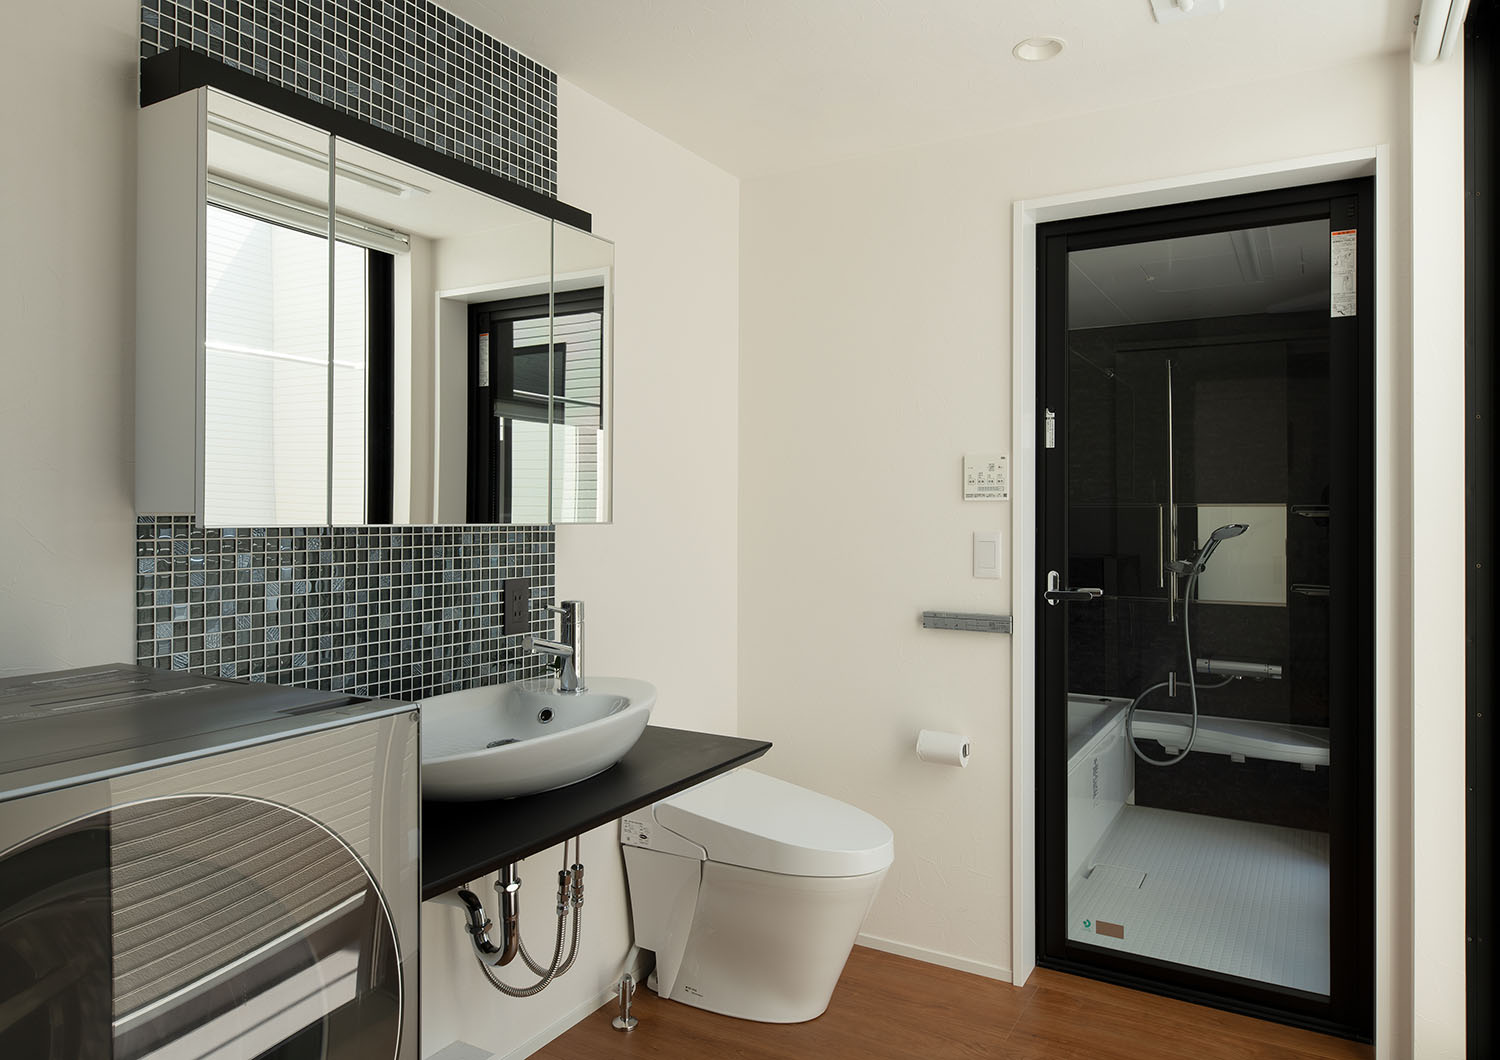 洗面所とトイレと浴室がまとまった空間・デザイン住宅